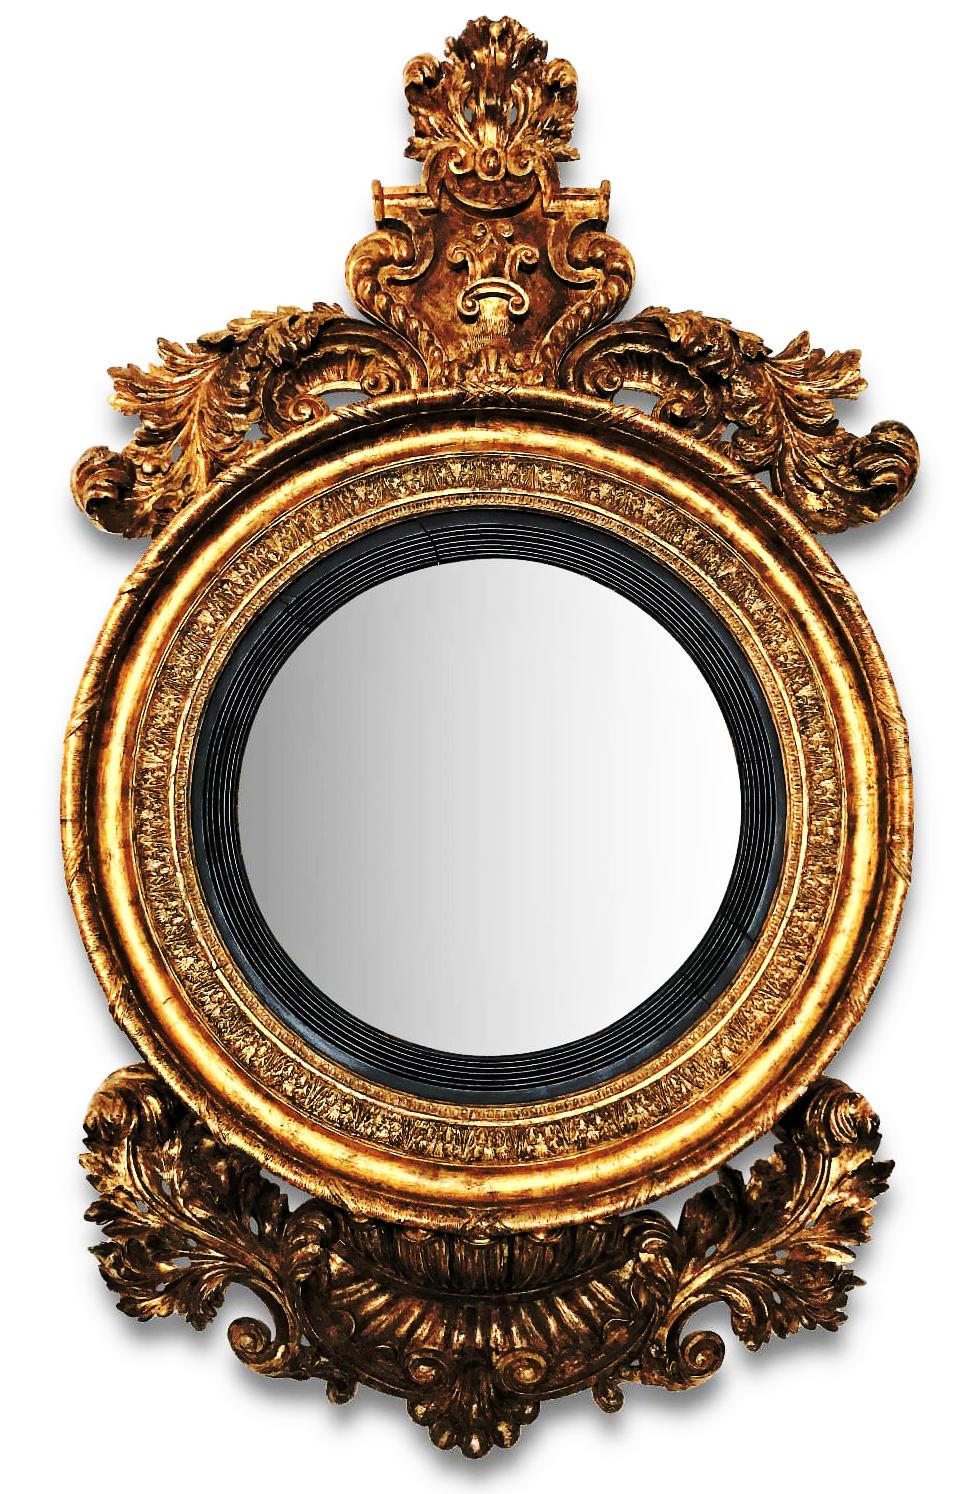 Ein monumentaler irischer konvexer Spiegel aus vergoldetem Holz von George IV.
Ein sehr großer und beeindruckender konvexer Spiegel aus vergoldetem Holz von George IV. Die originale kreisförmige konvexe Spiegelplatte ist mit einer schwarzen,